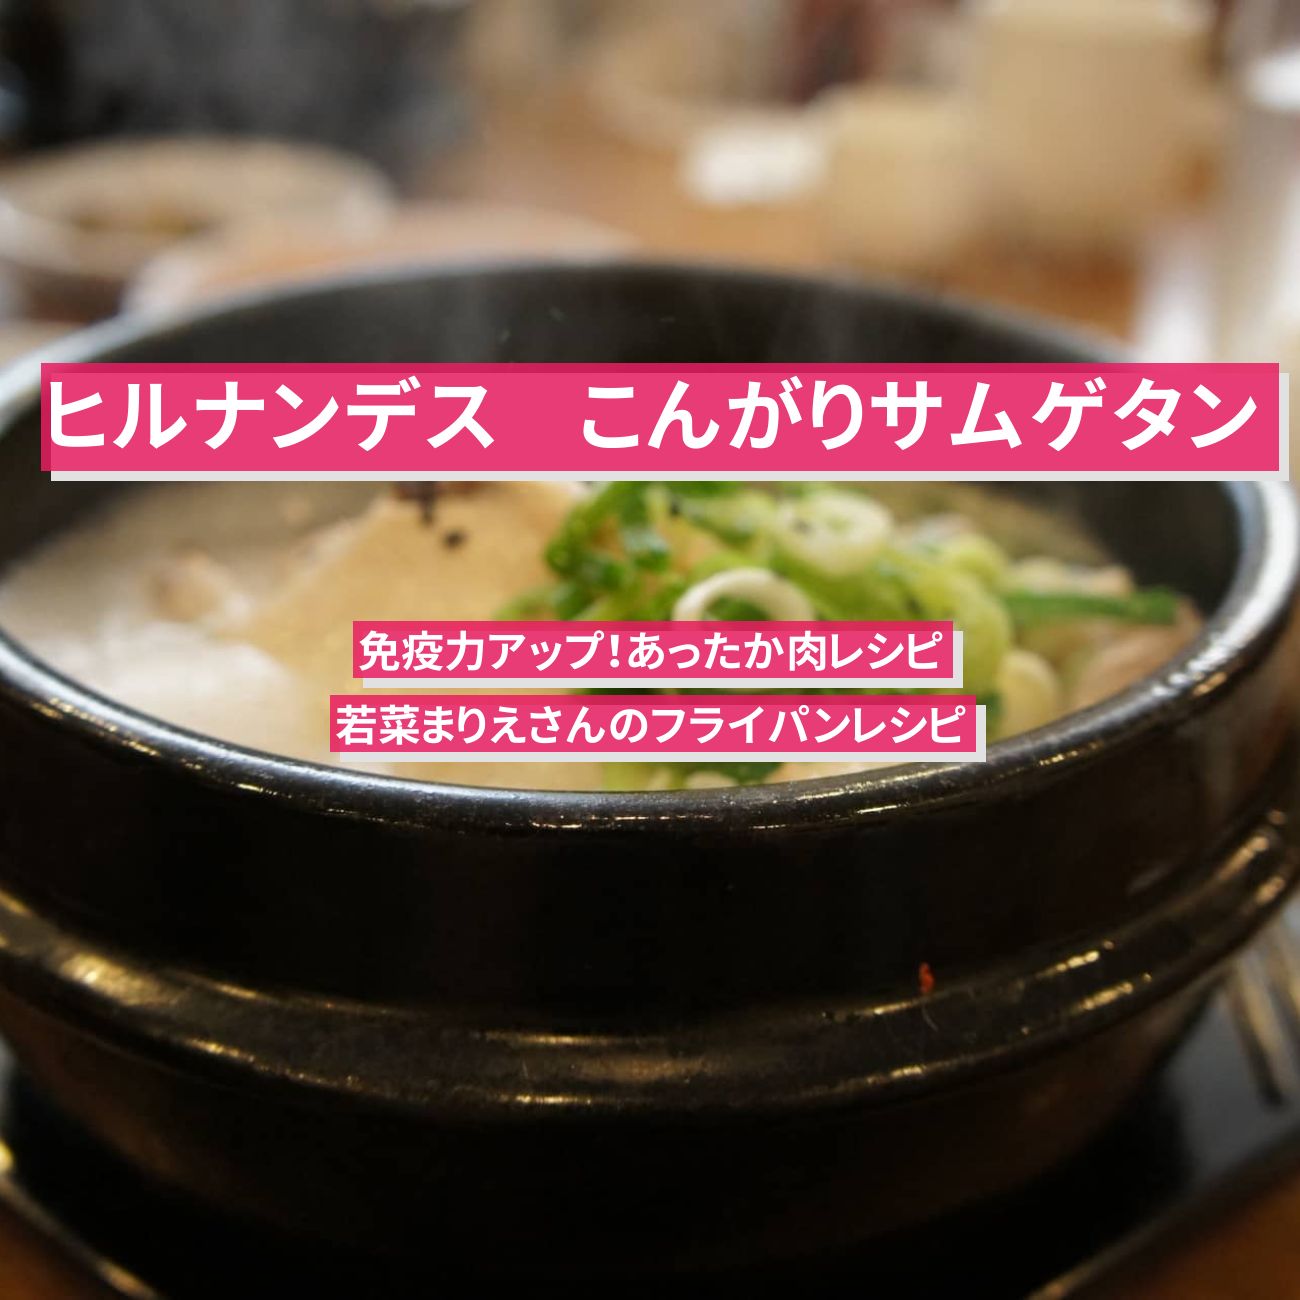 【ヒルナンデス】フライパンで『こんがりサムゲタン』若菜まりえさんのレシピ・作り方を紹介